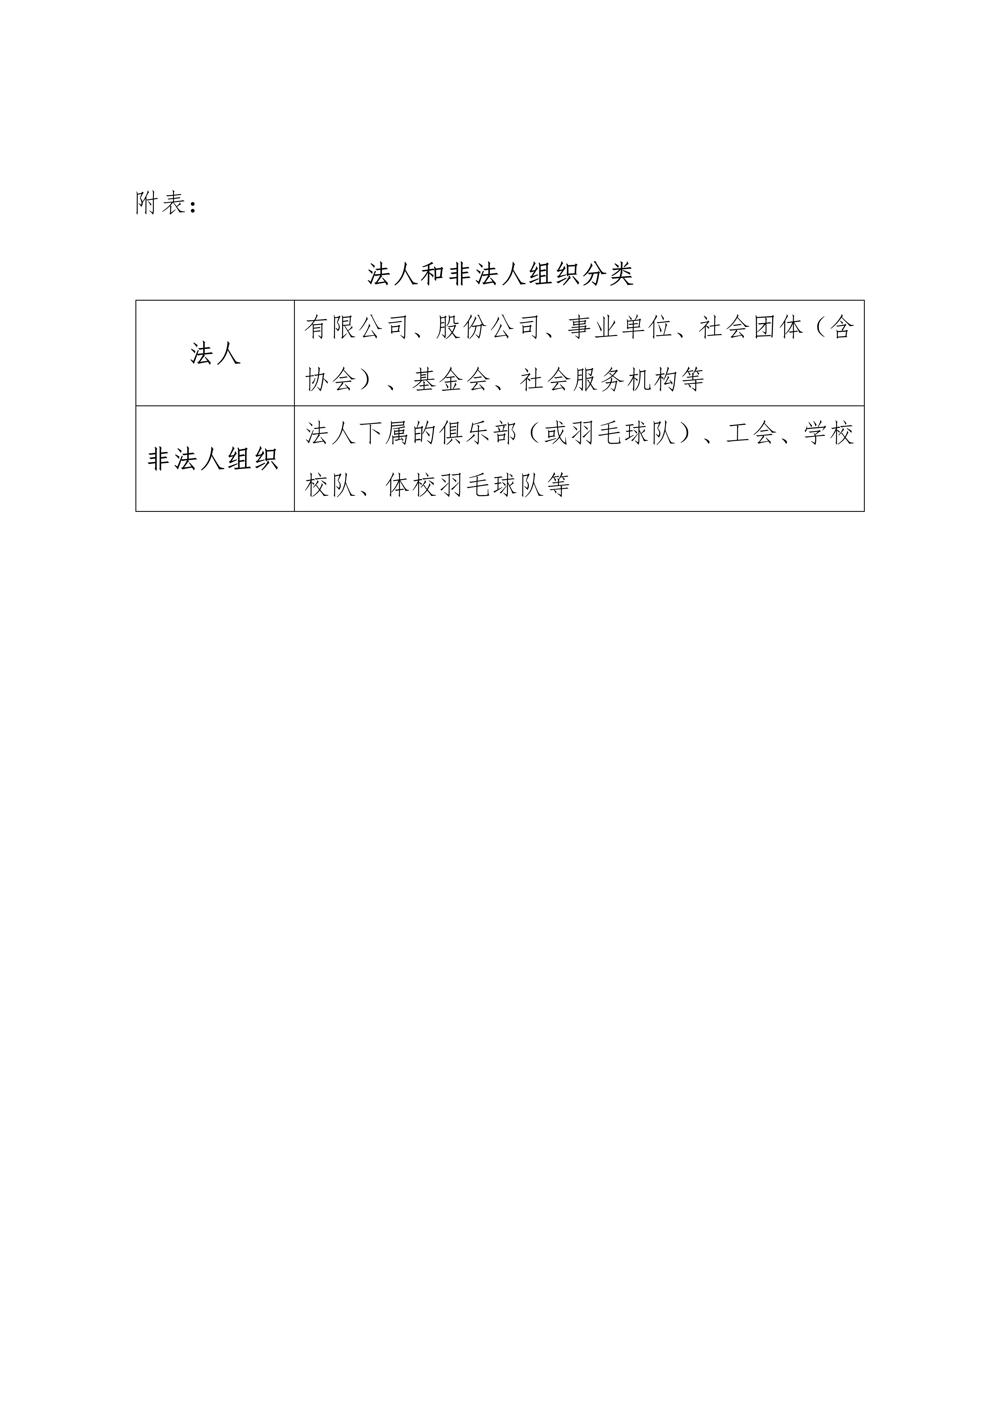 广东省羽毛球协会关于开展2022年度俱乐部注册工作的通知-合并版_04